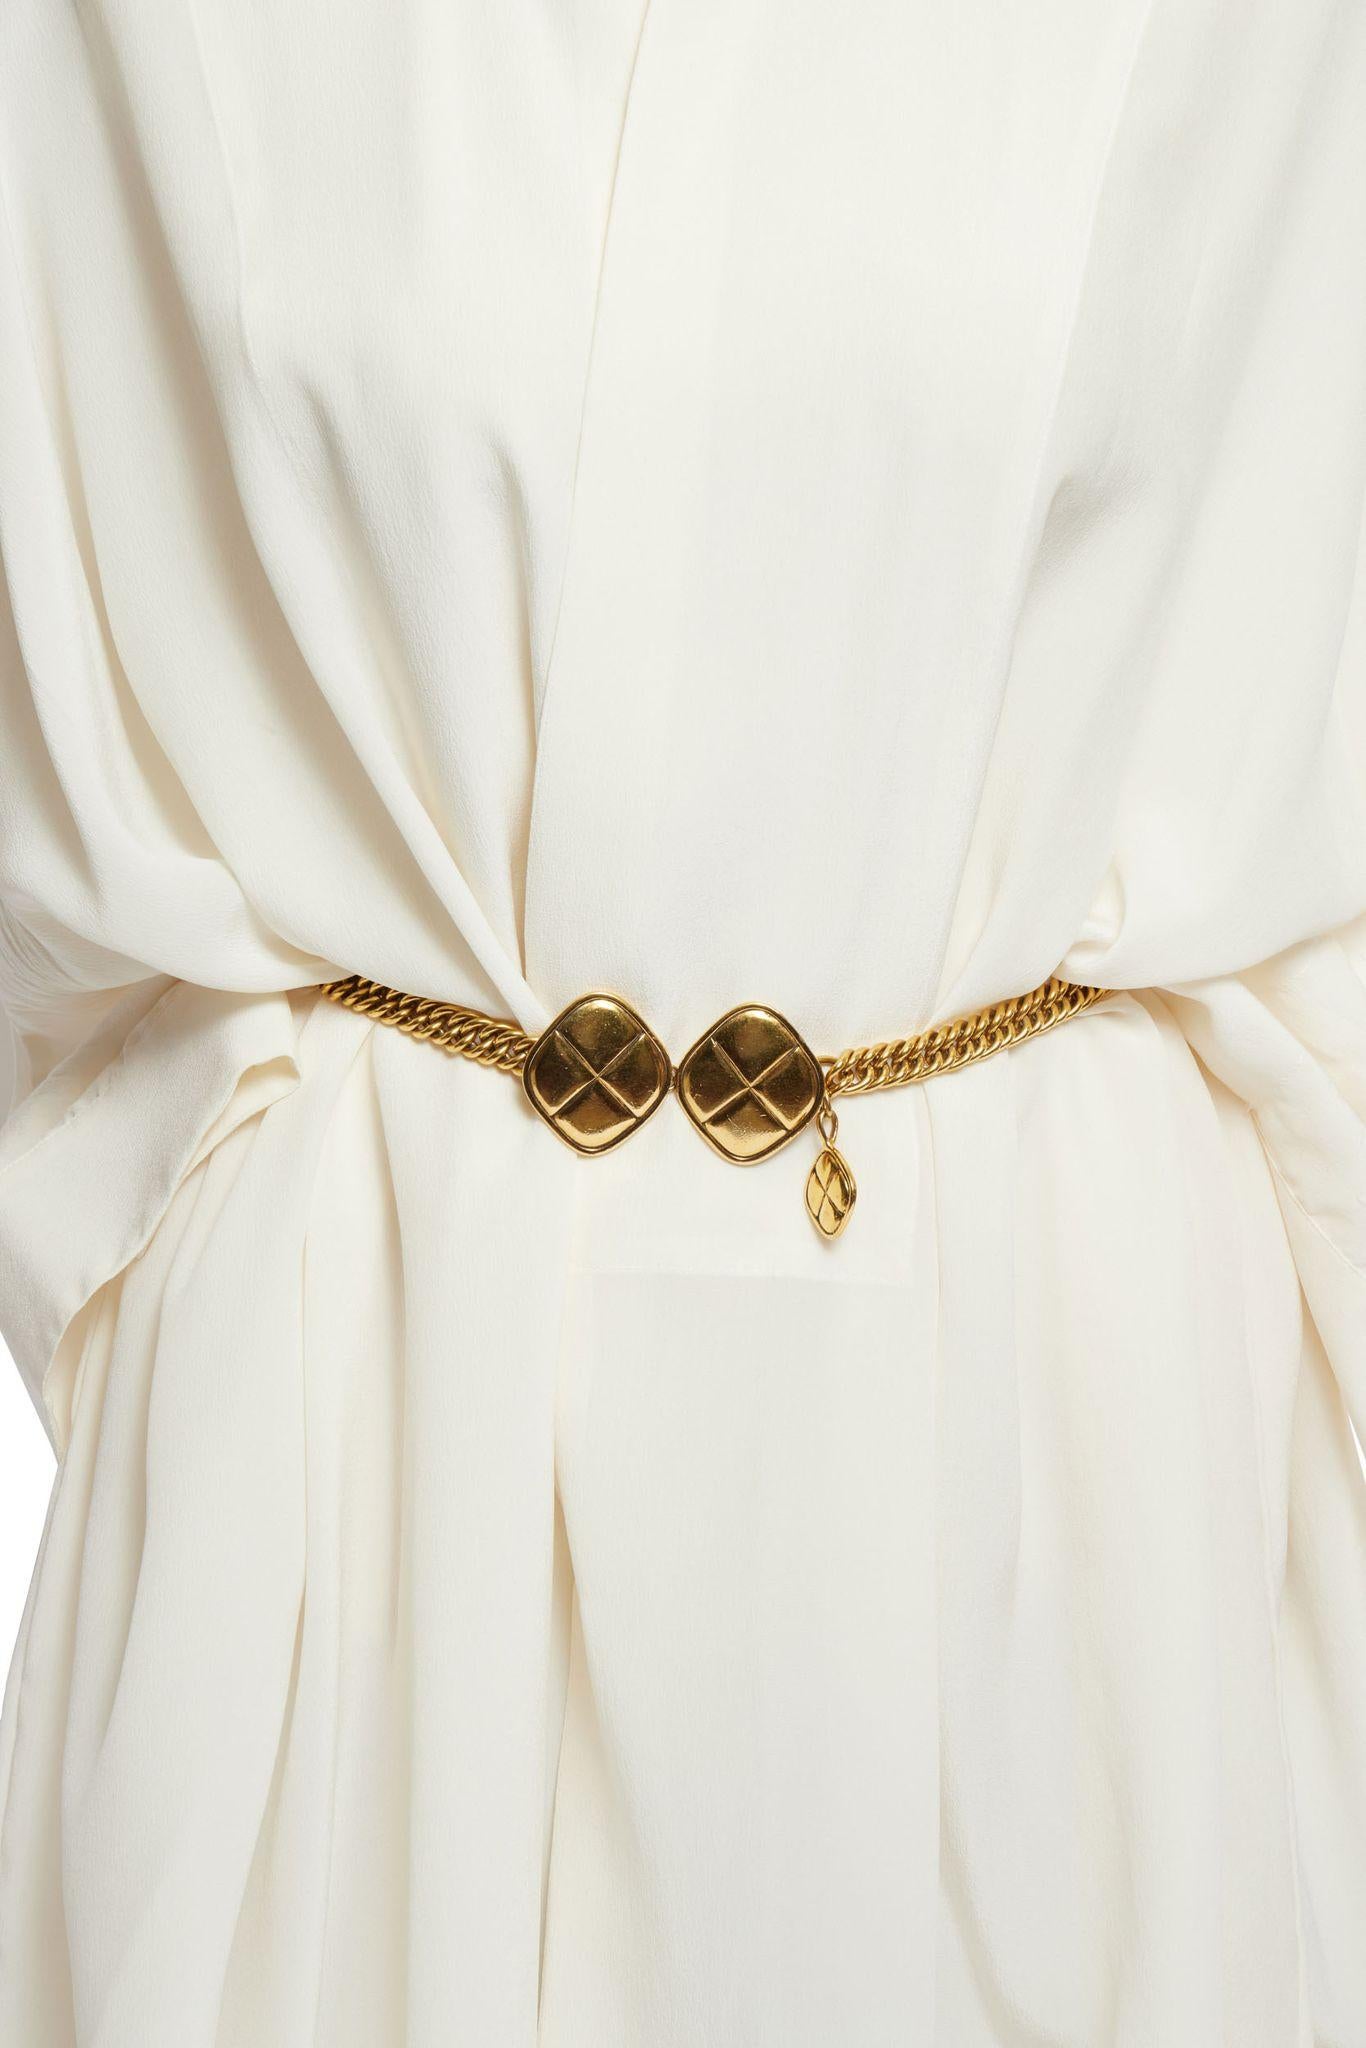 Chanel, collier/belet en or matelassé des années 80  Excellent état - En vente à West Hollywood, CA